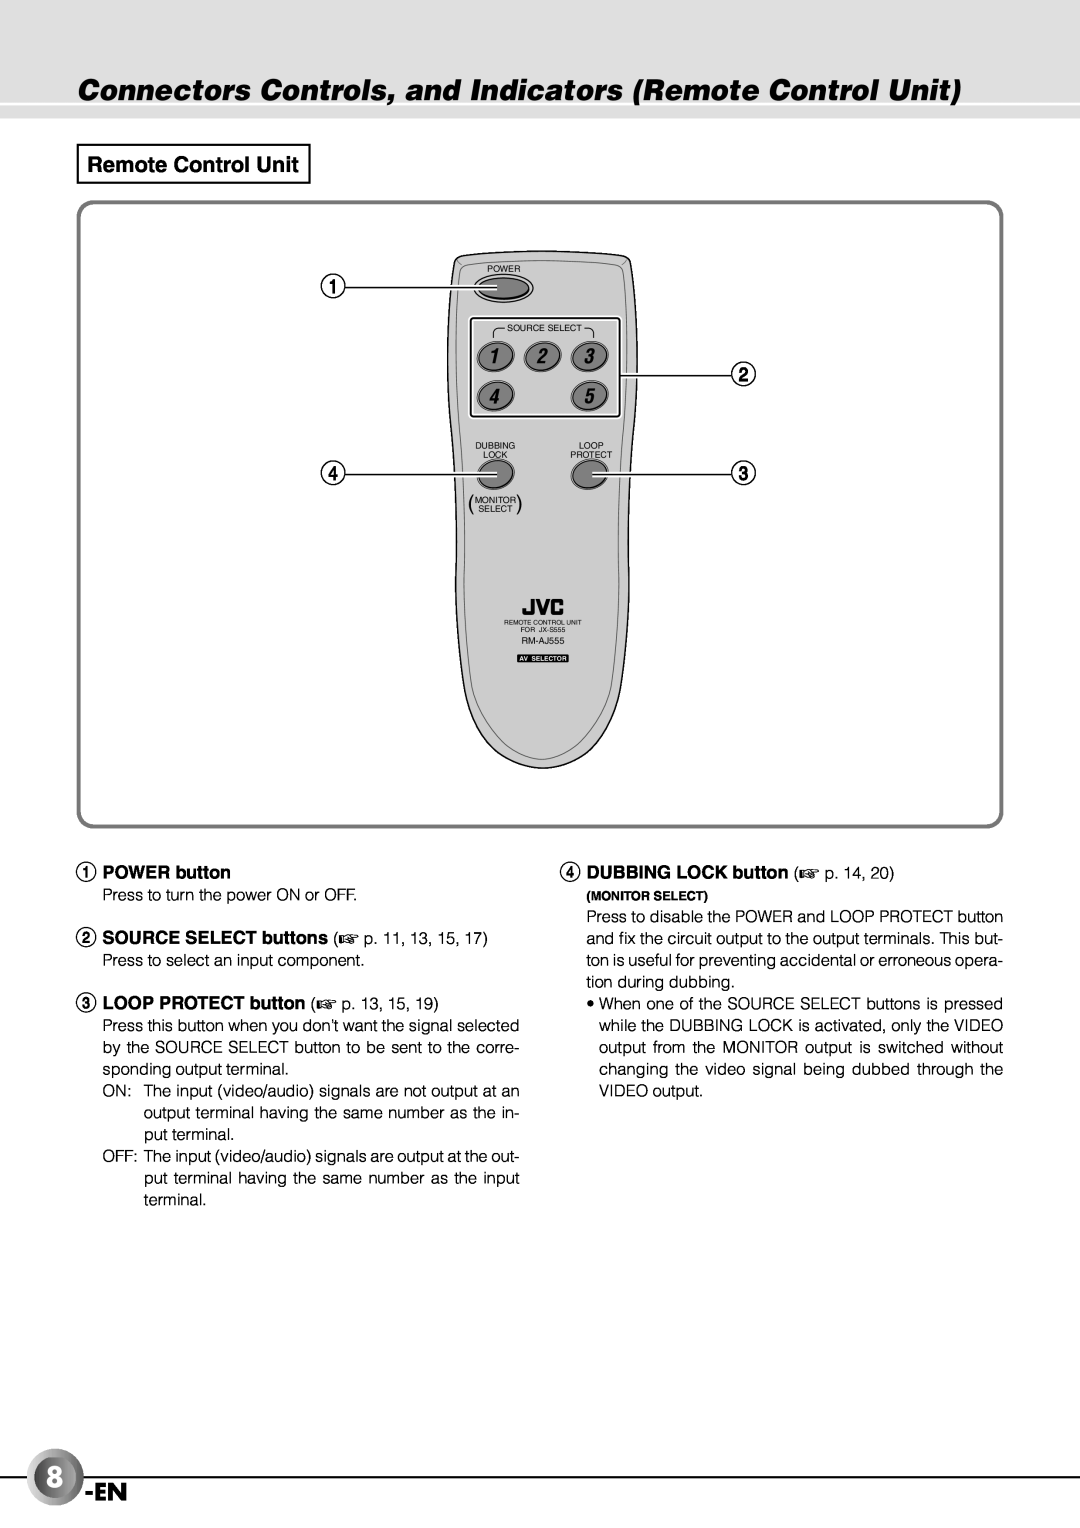 JVC JX-B555 manual 8-EN, Remote Control Unit, 1POWER button, 3LOOP PROTECT button p, 4DUBBING LOCK button p 